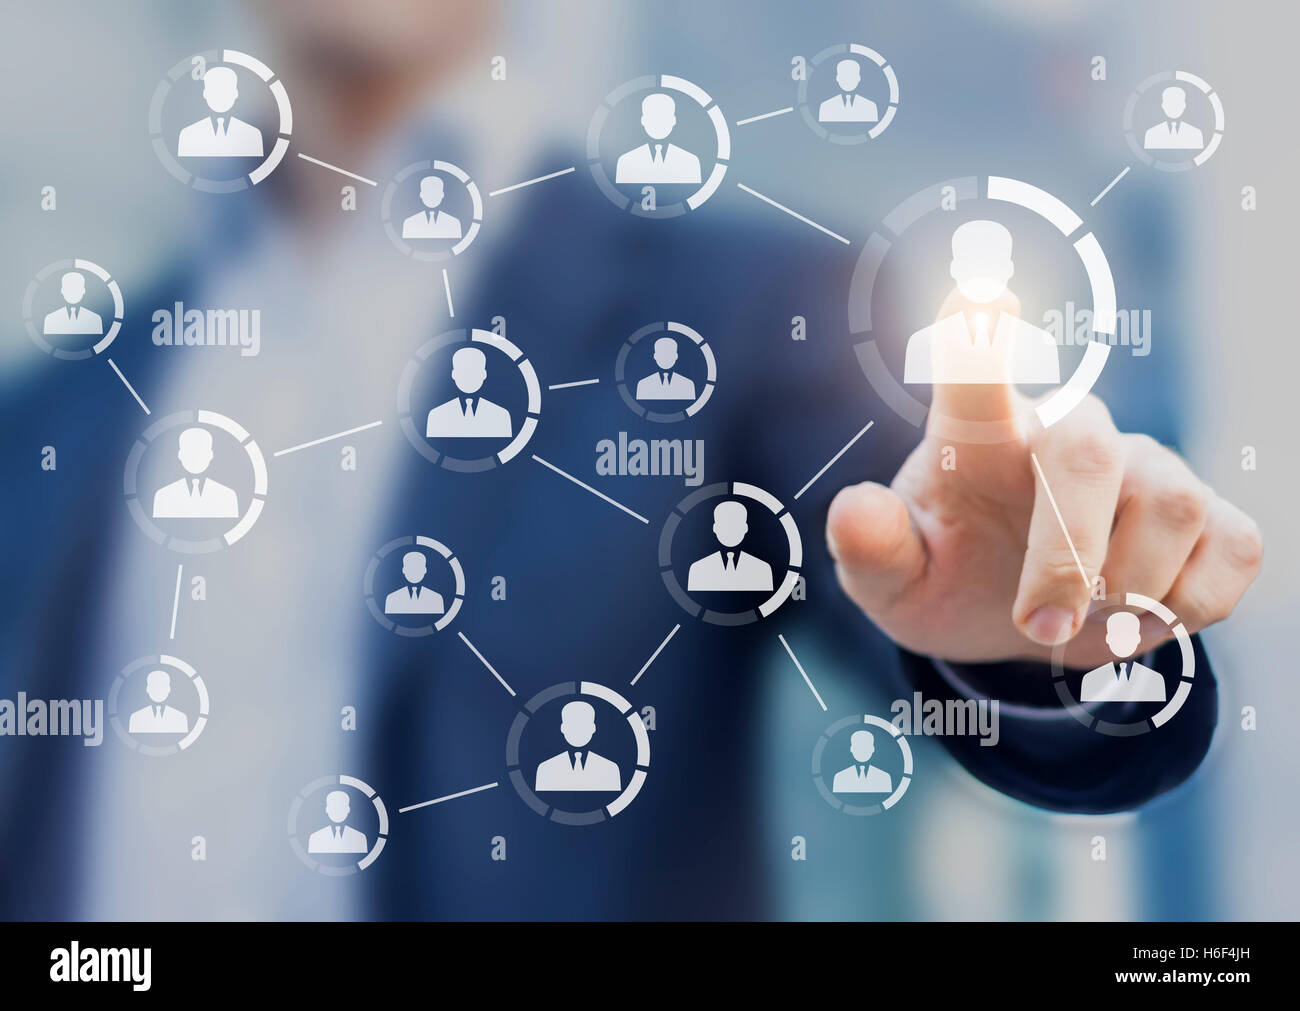 Concepto de networking profesional con iconos de gente de negocios conectados juntos simbolizando un equipo o un grupo de compañeros de trabajo Foto de stock